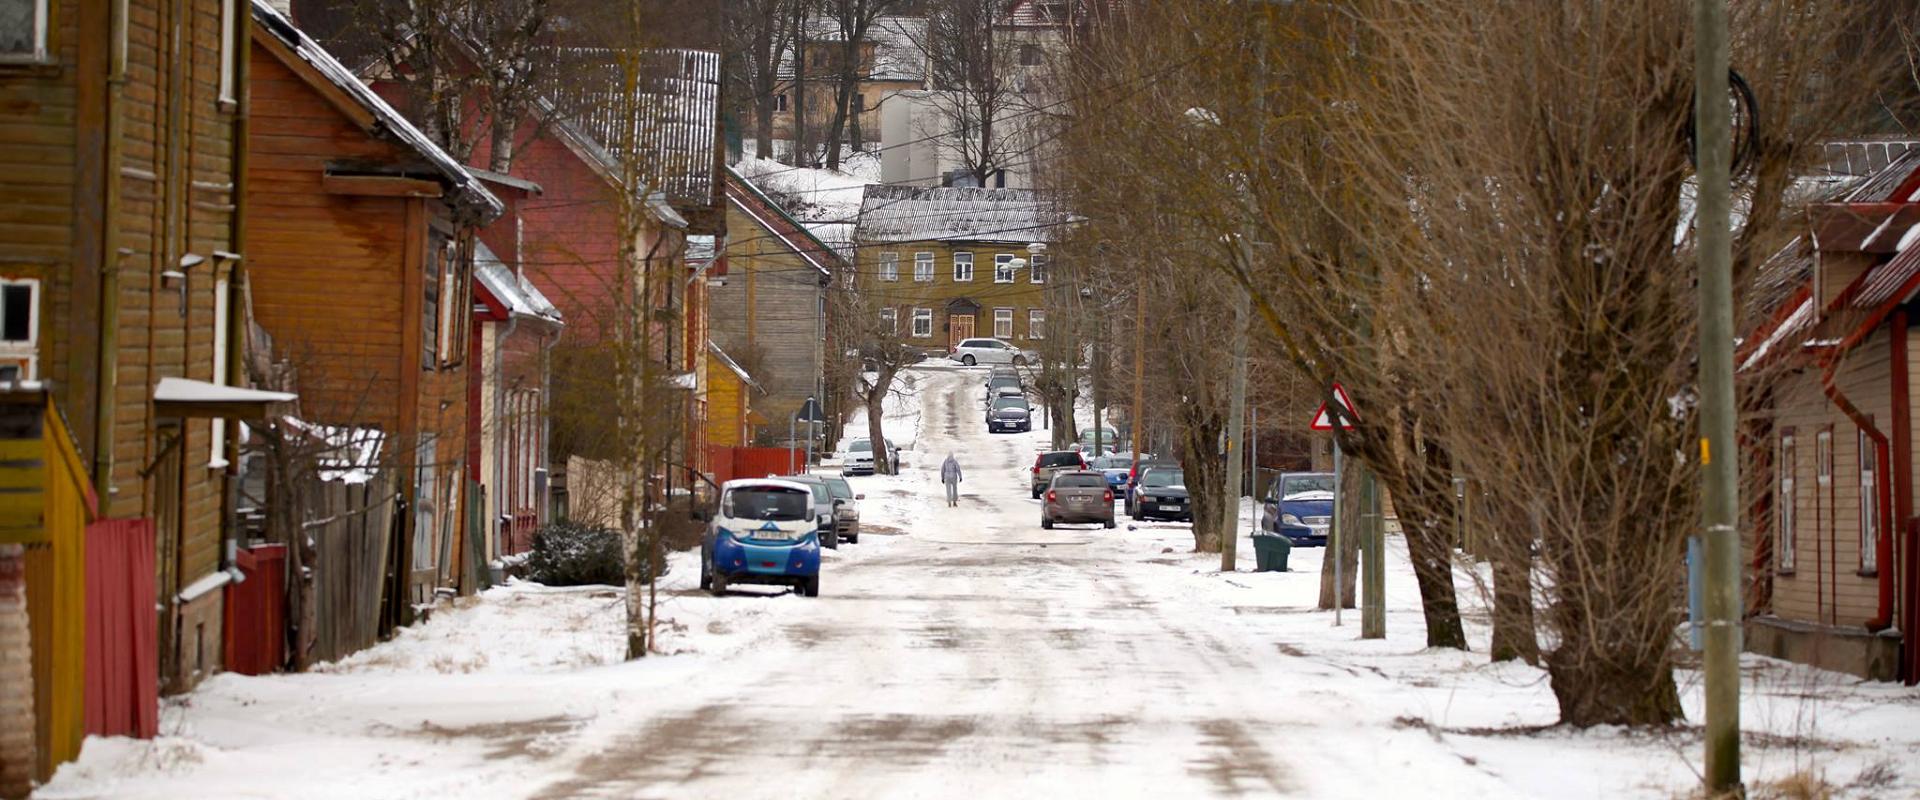 Supilinnas pilsētas daļa ar koka ēkām un brīnišķīgu vidi sniegotā ziemā